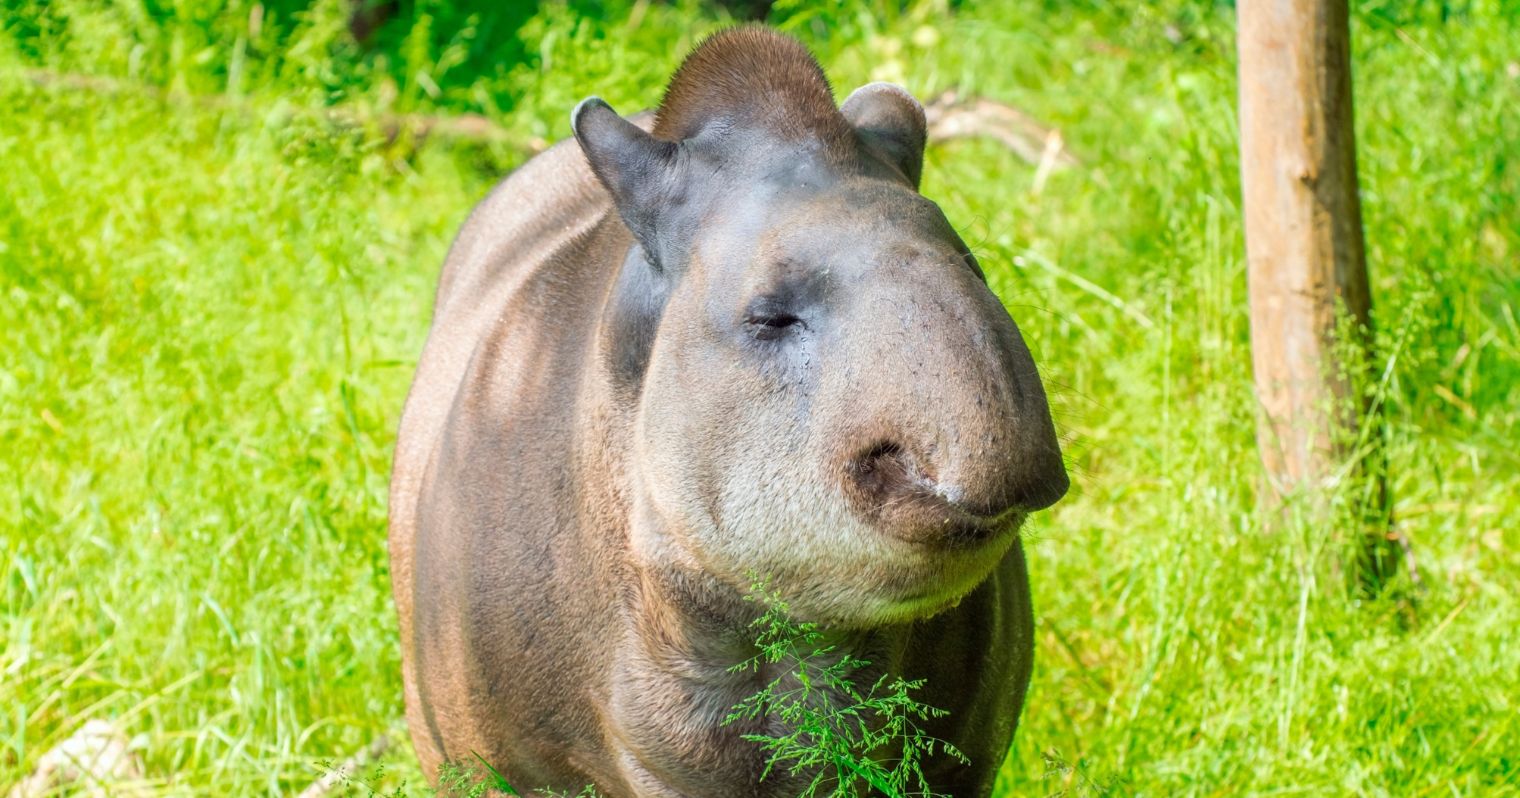 Nagyobb testű állat van a képen, aminek az orra kissé a szájára hajlik, hátrébb pedig hátrafelé álló fülei vannak, szürkés barna színű és aranyos tekintetű.